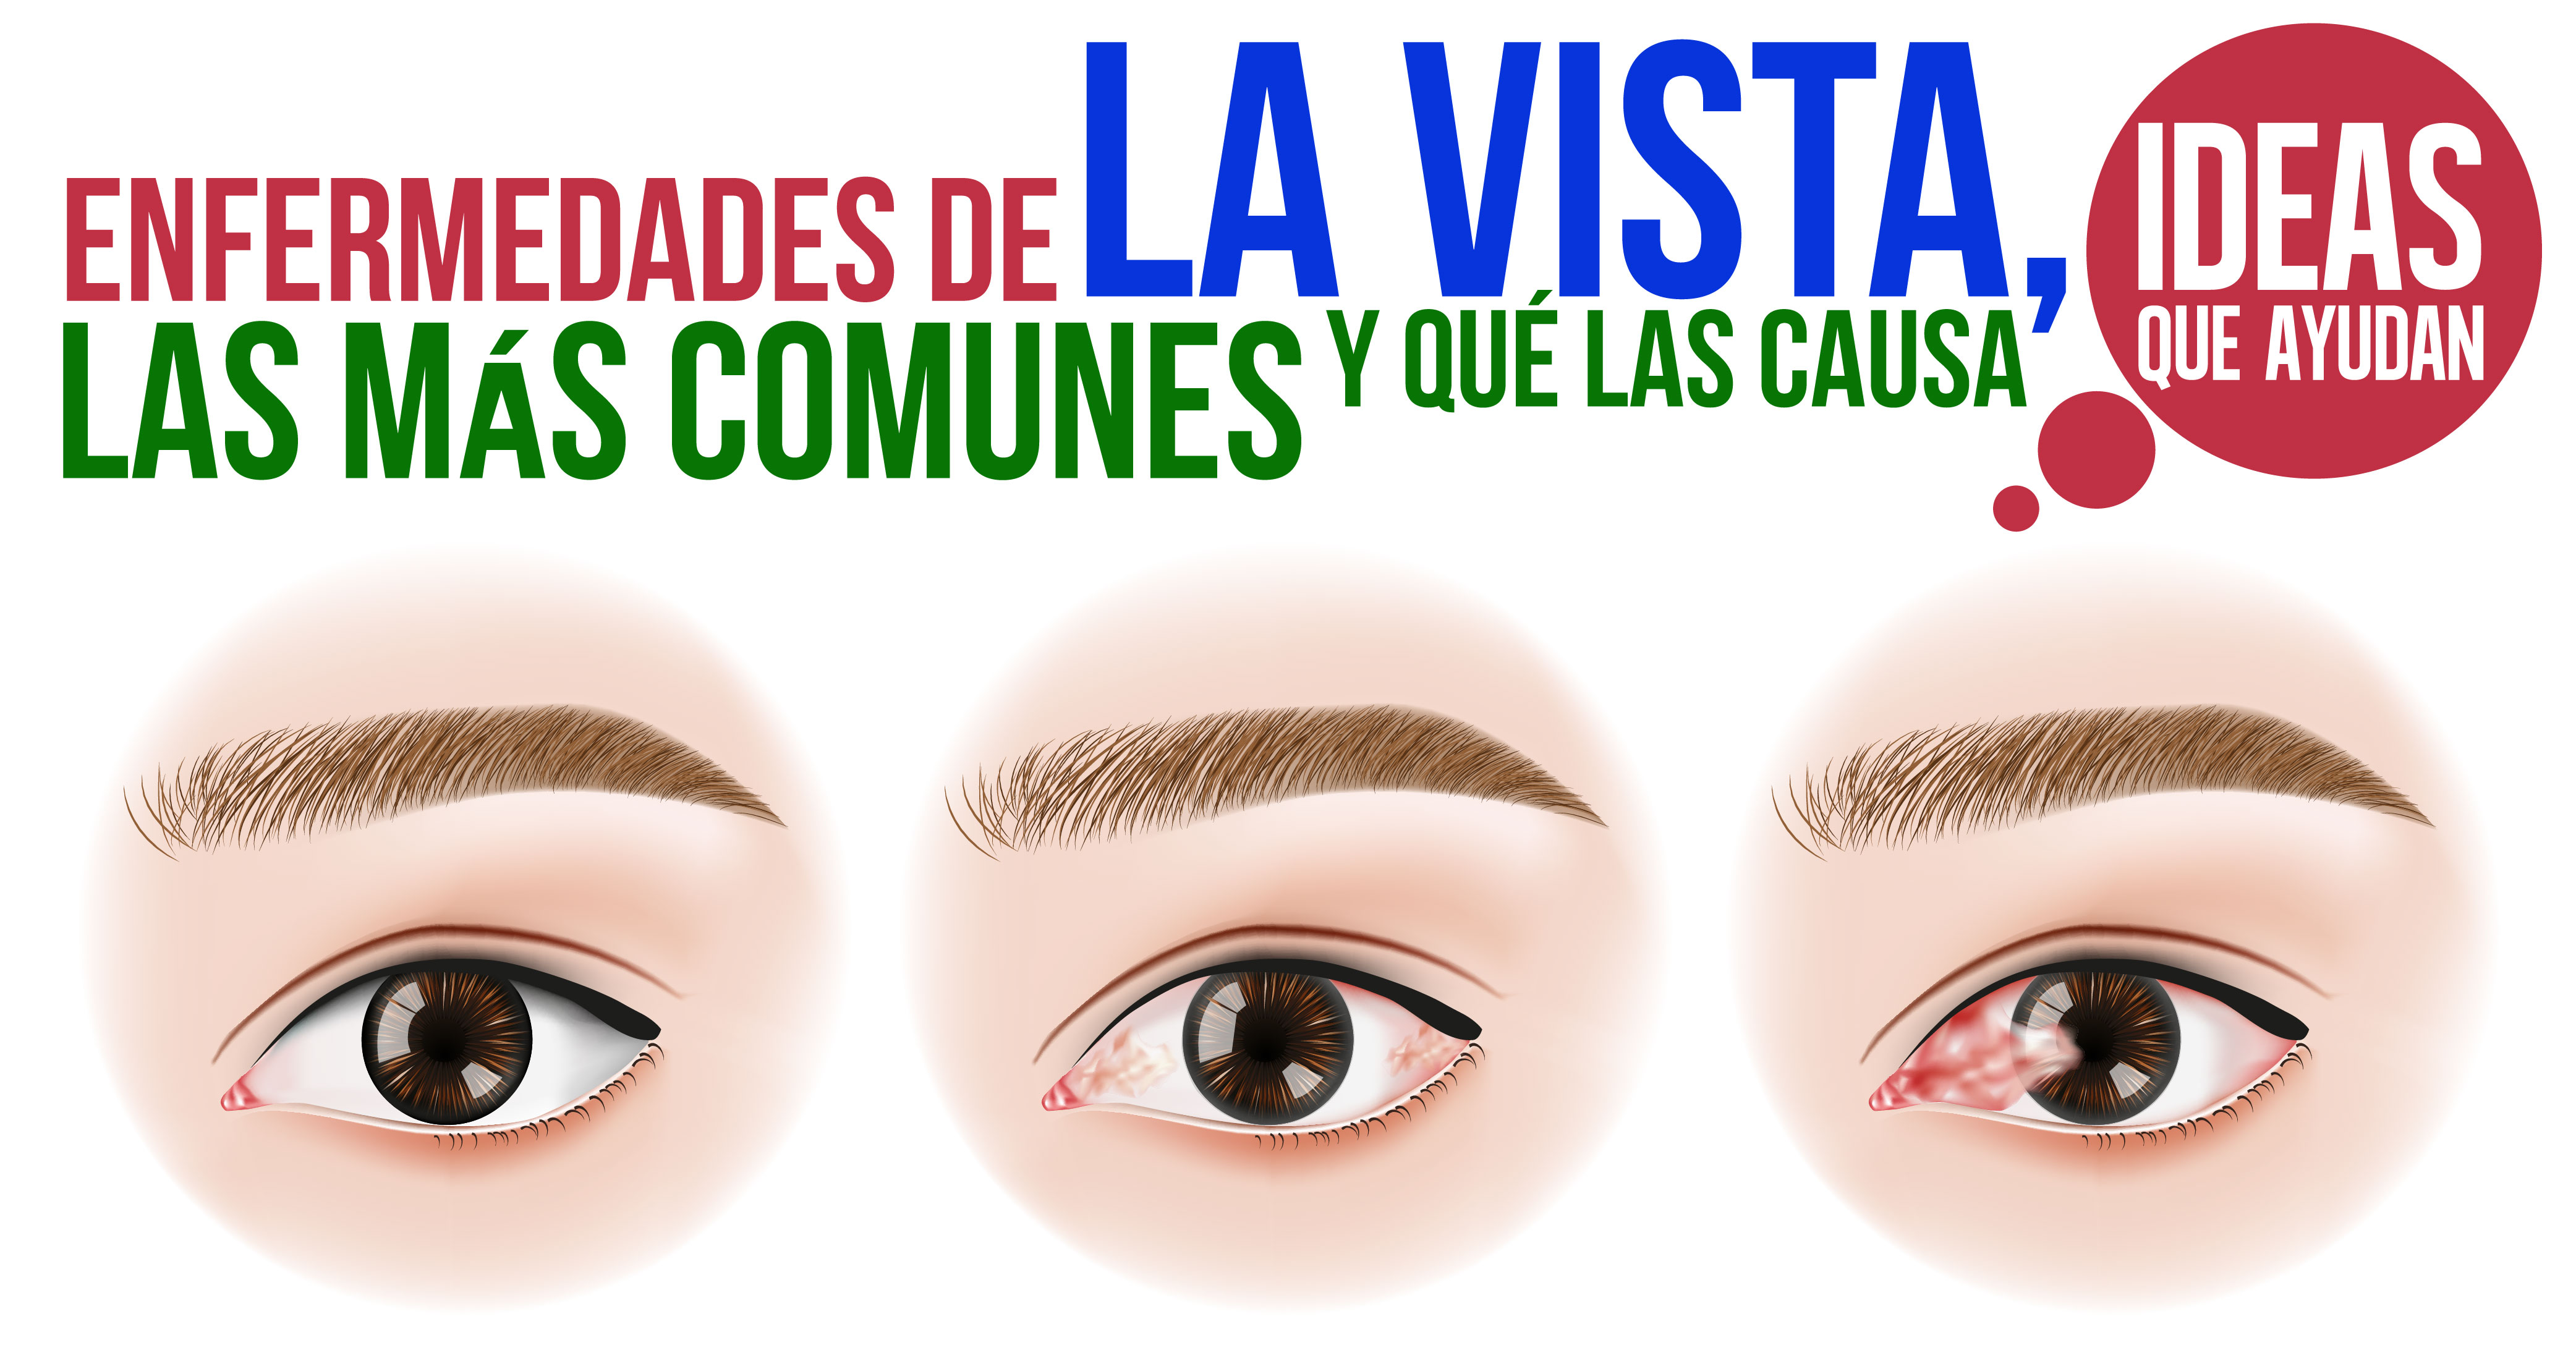 Enfermedades de la vista más comunes y qué las causa